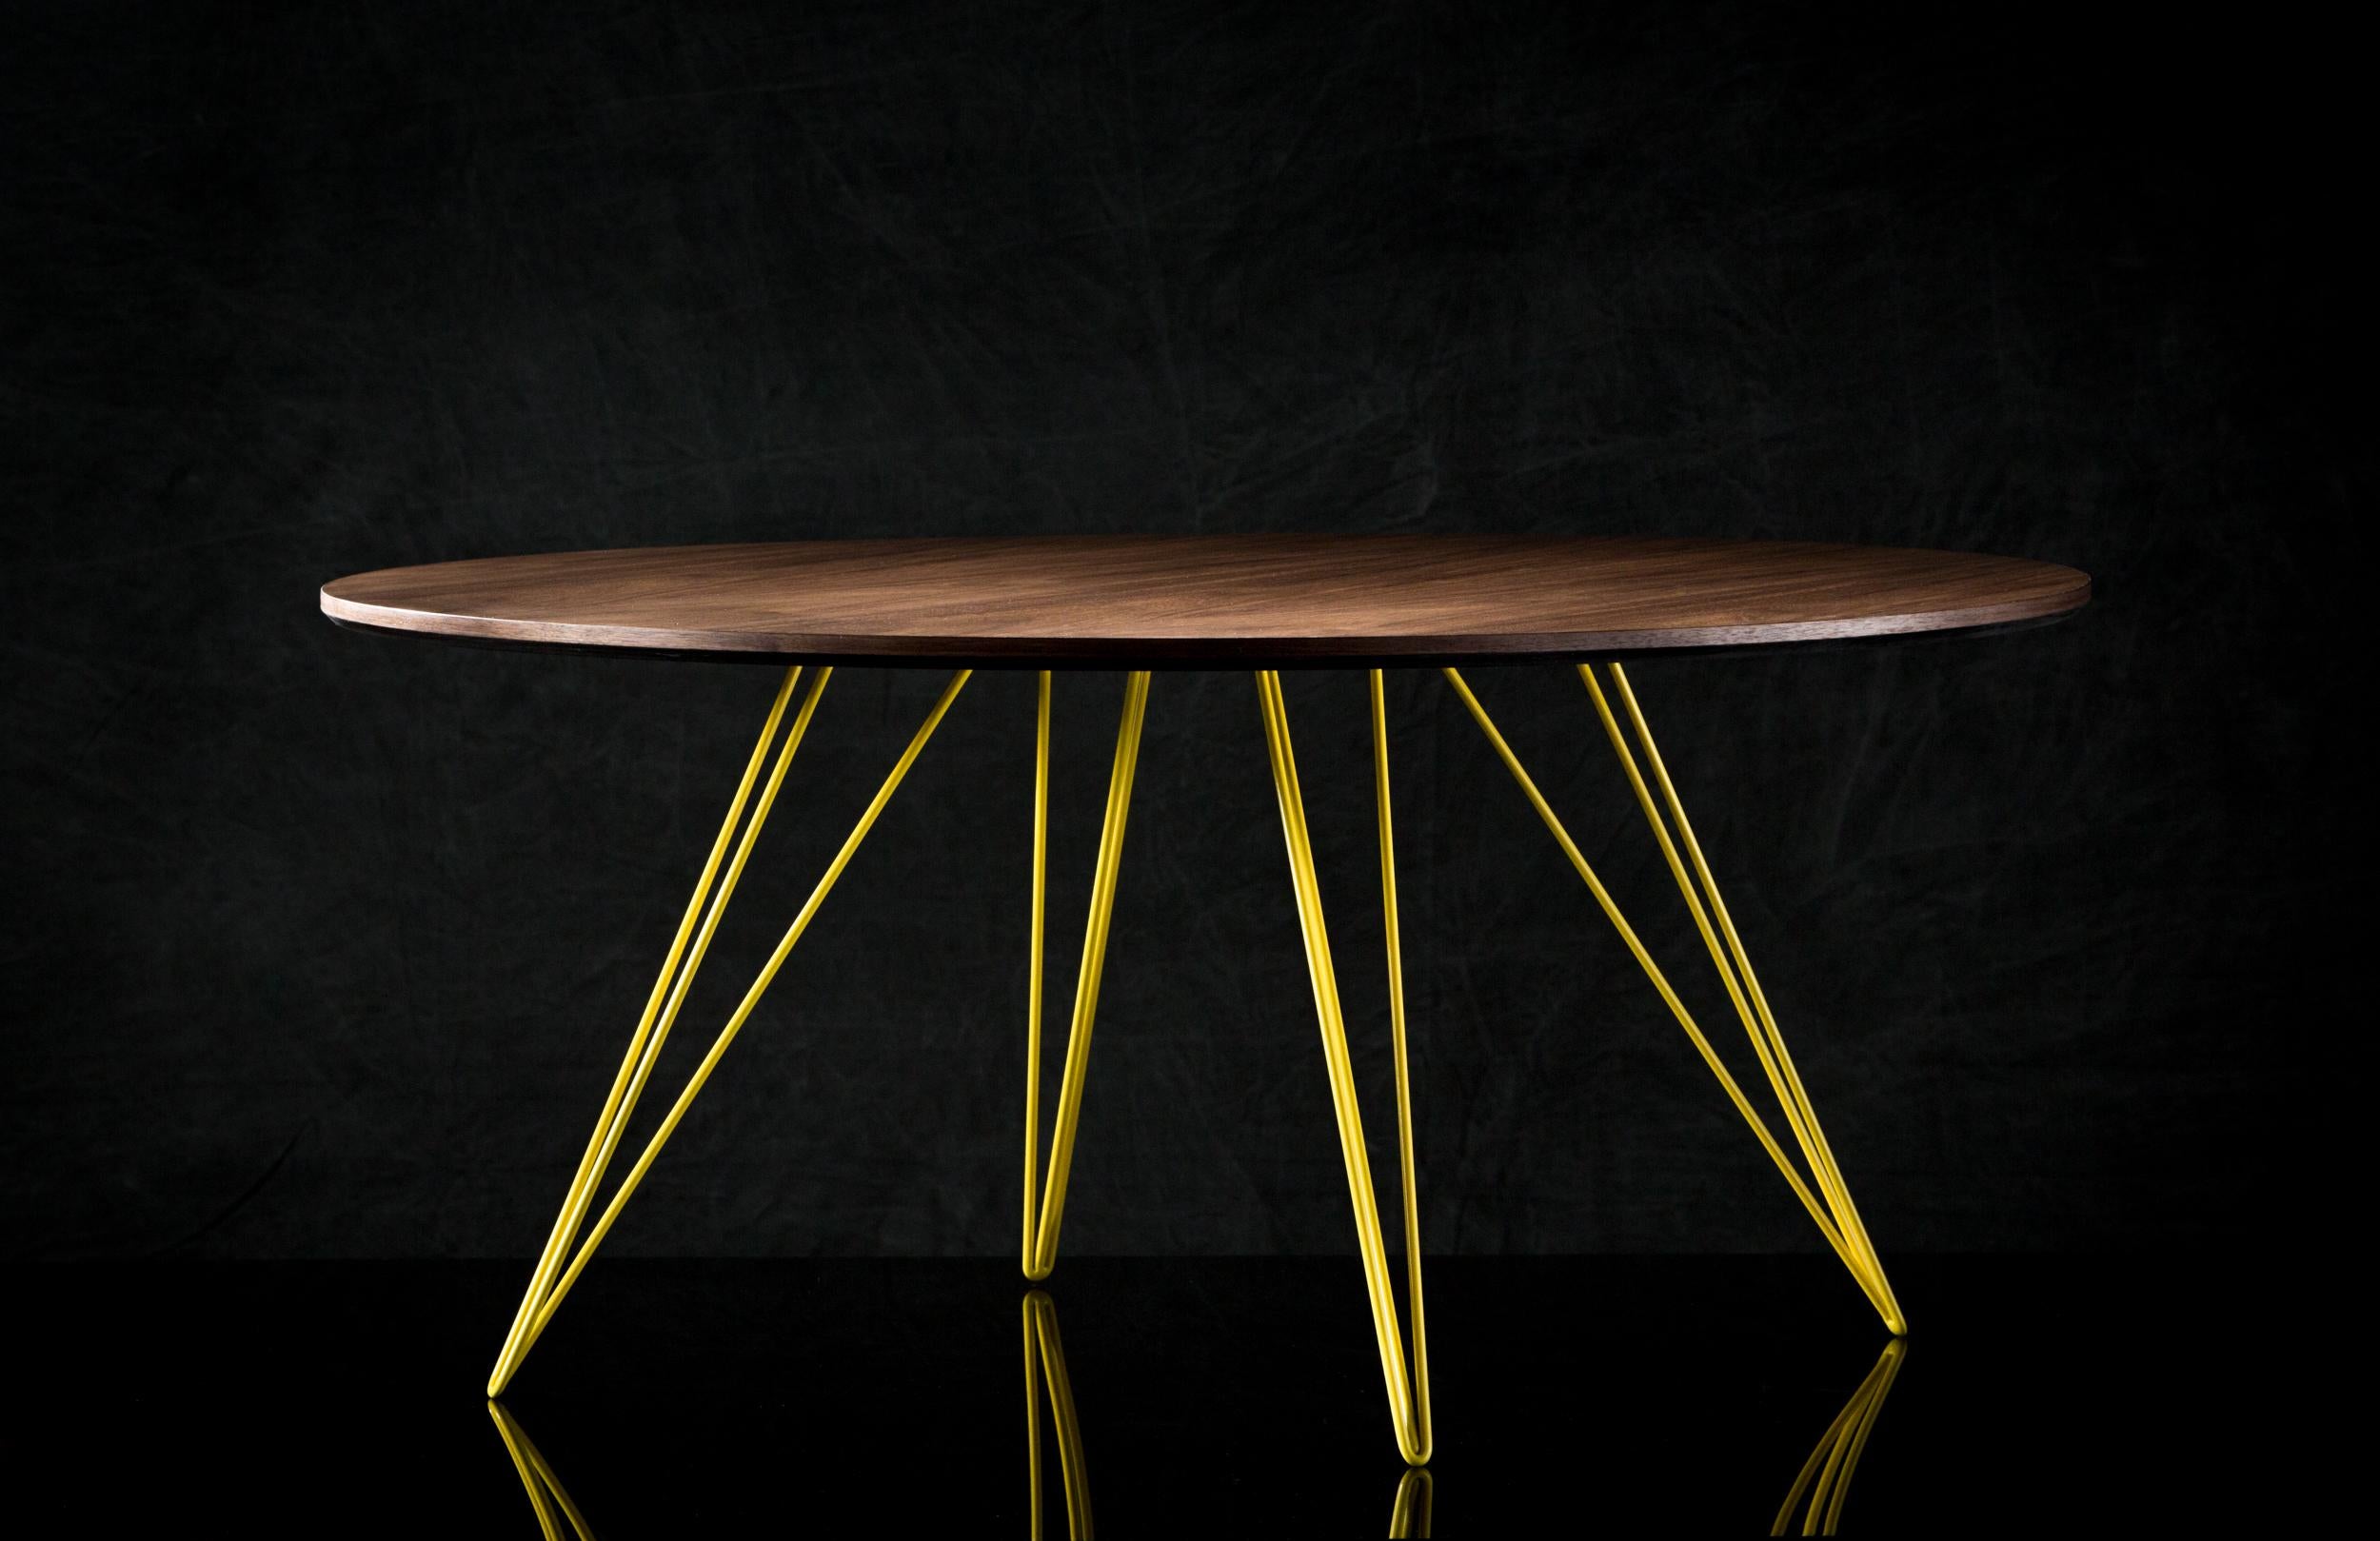 Une table fine, élégante et légère qui peut être personnalisée selon la forme, la taille et la couleur souhaitées. Cet article fabriqué à la main allie parfaitement des pieds industriels en épingle à cheveux à un plateau en bois biseauté. La beauté